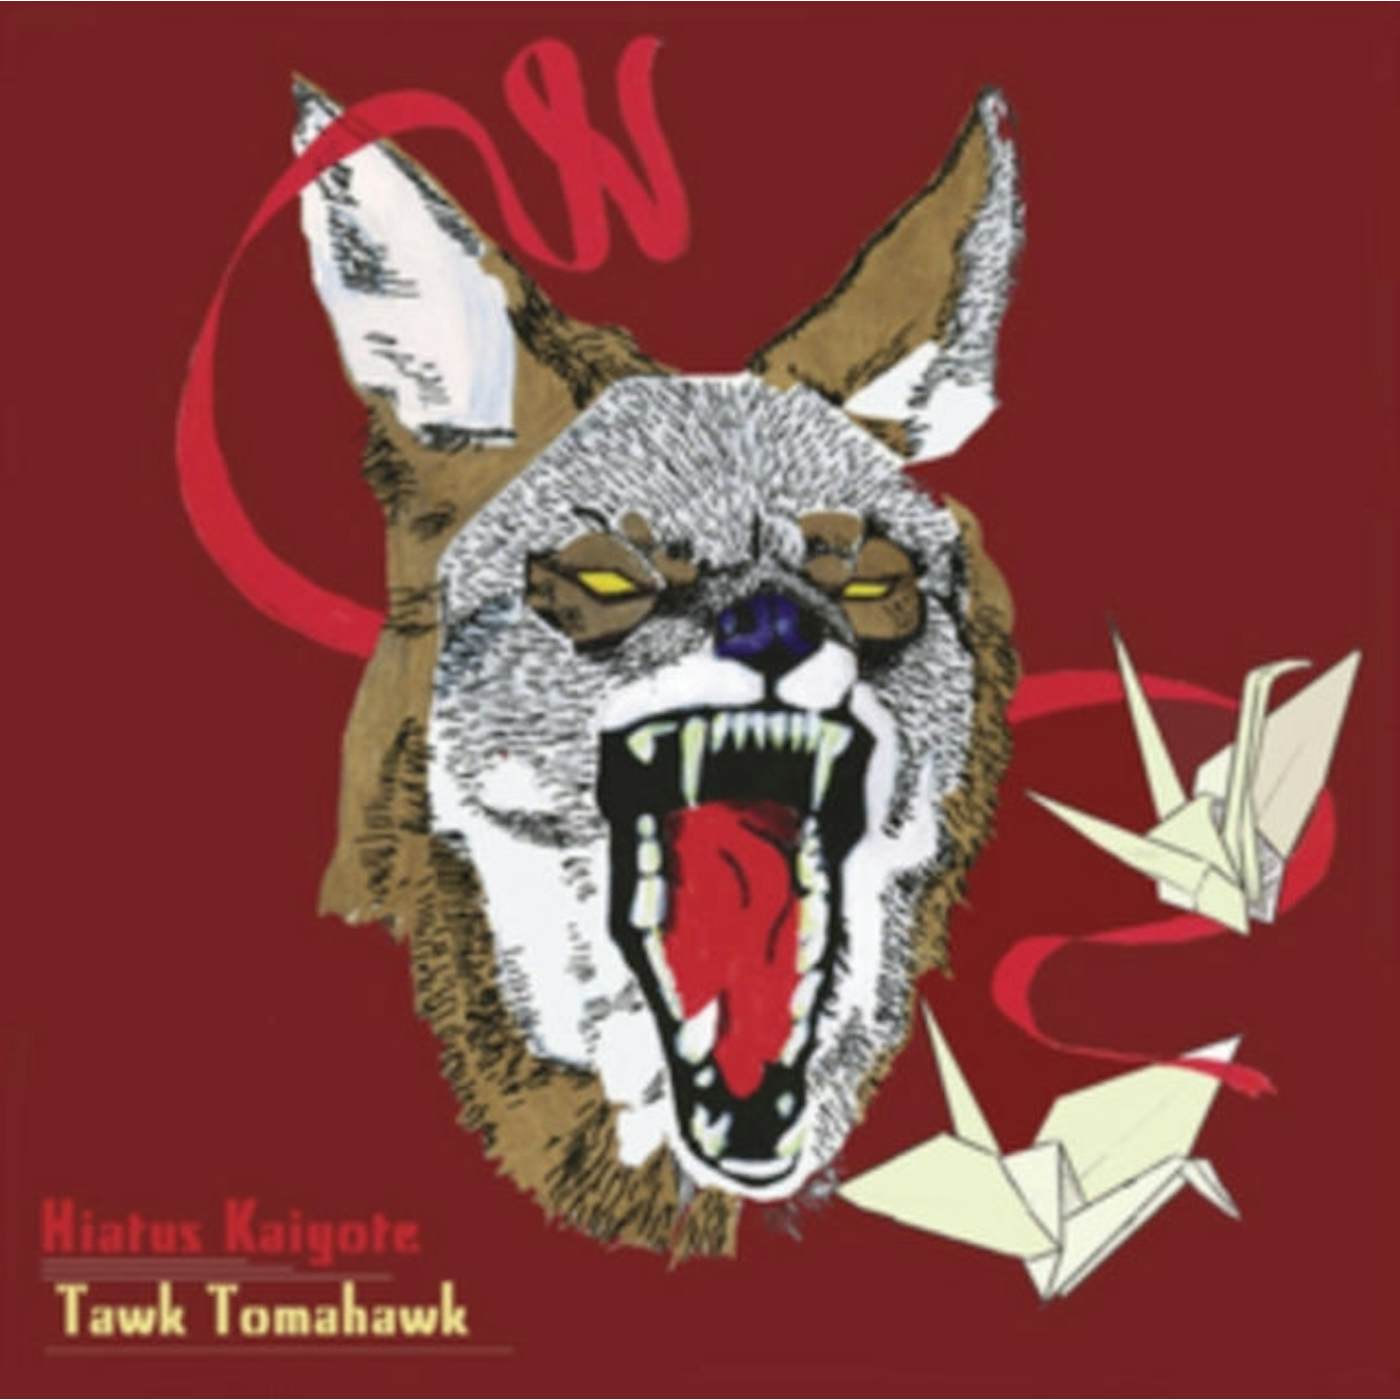 Hiatus Kaiyote LP Vinyl Record - Tawk Tomahawk